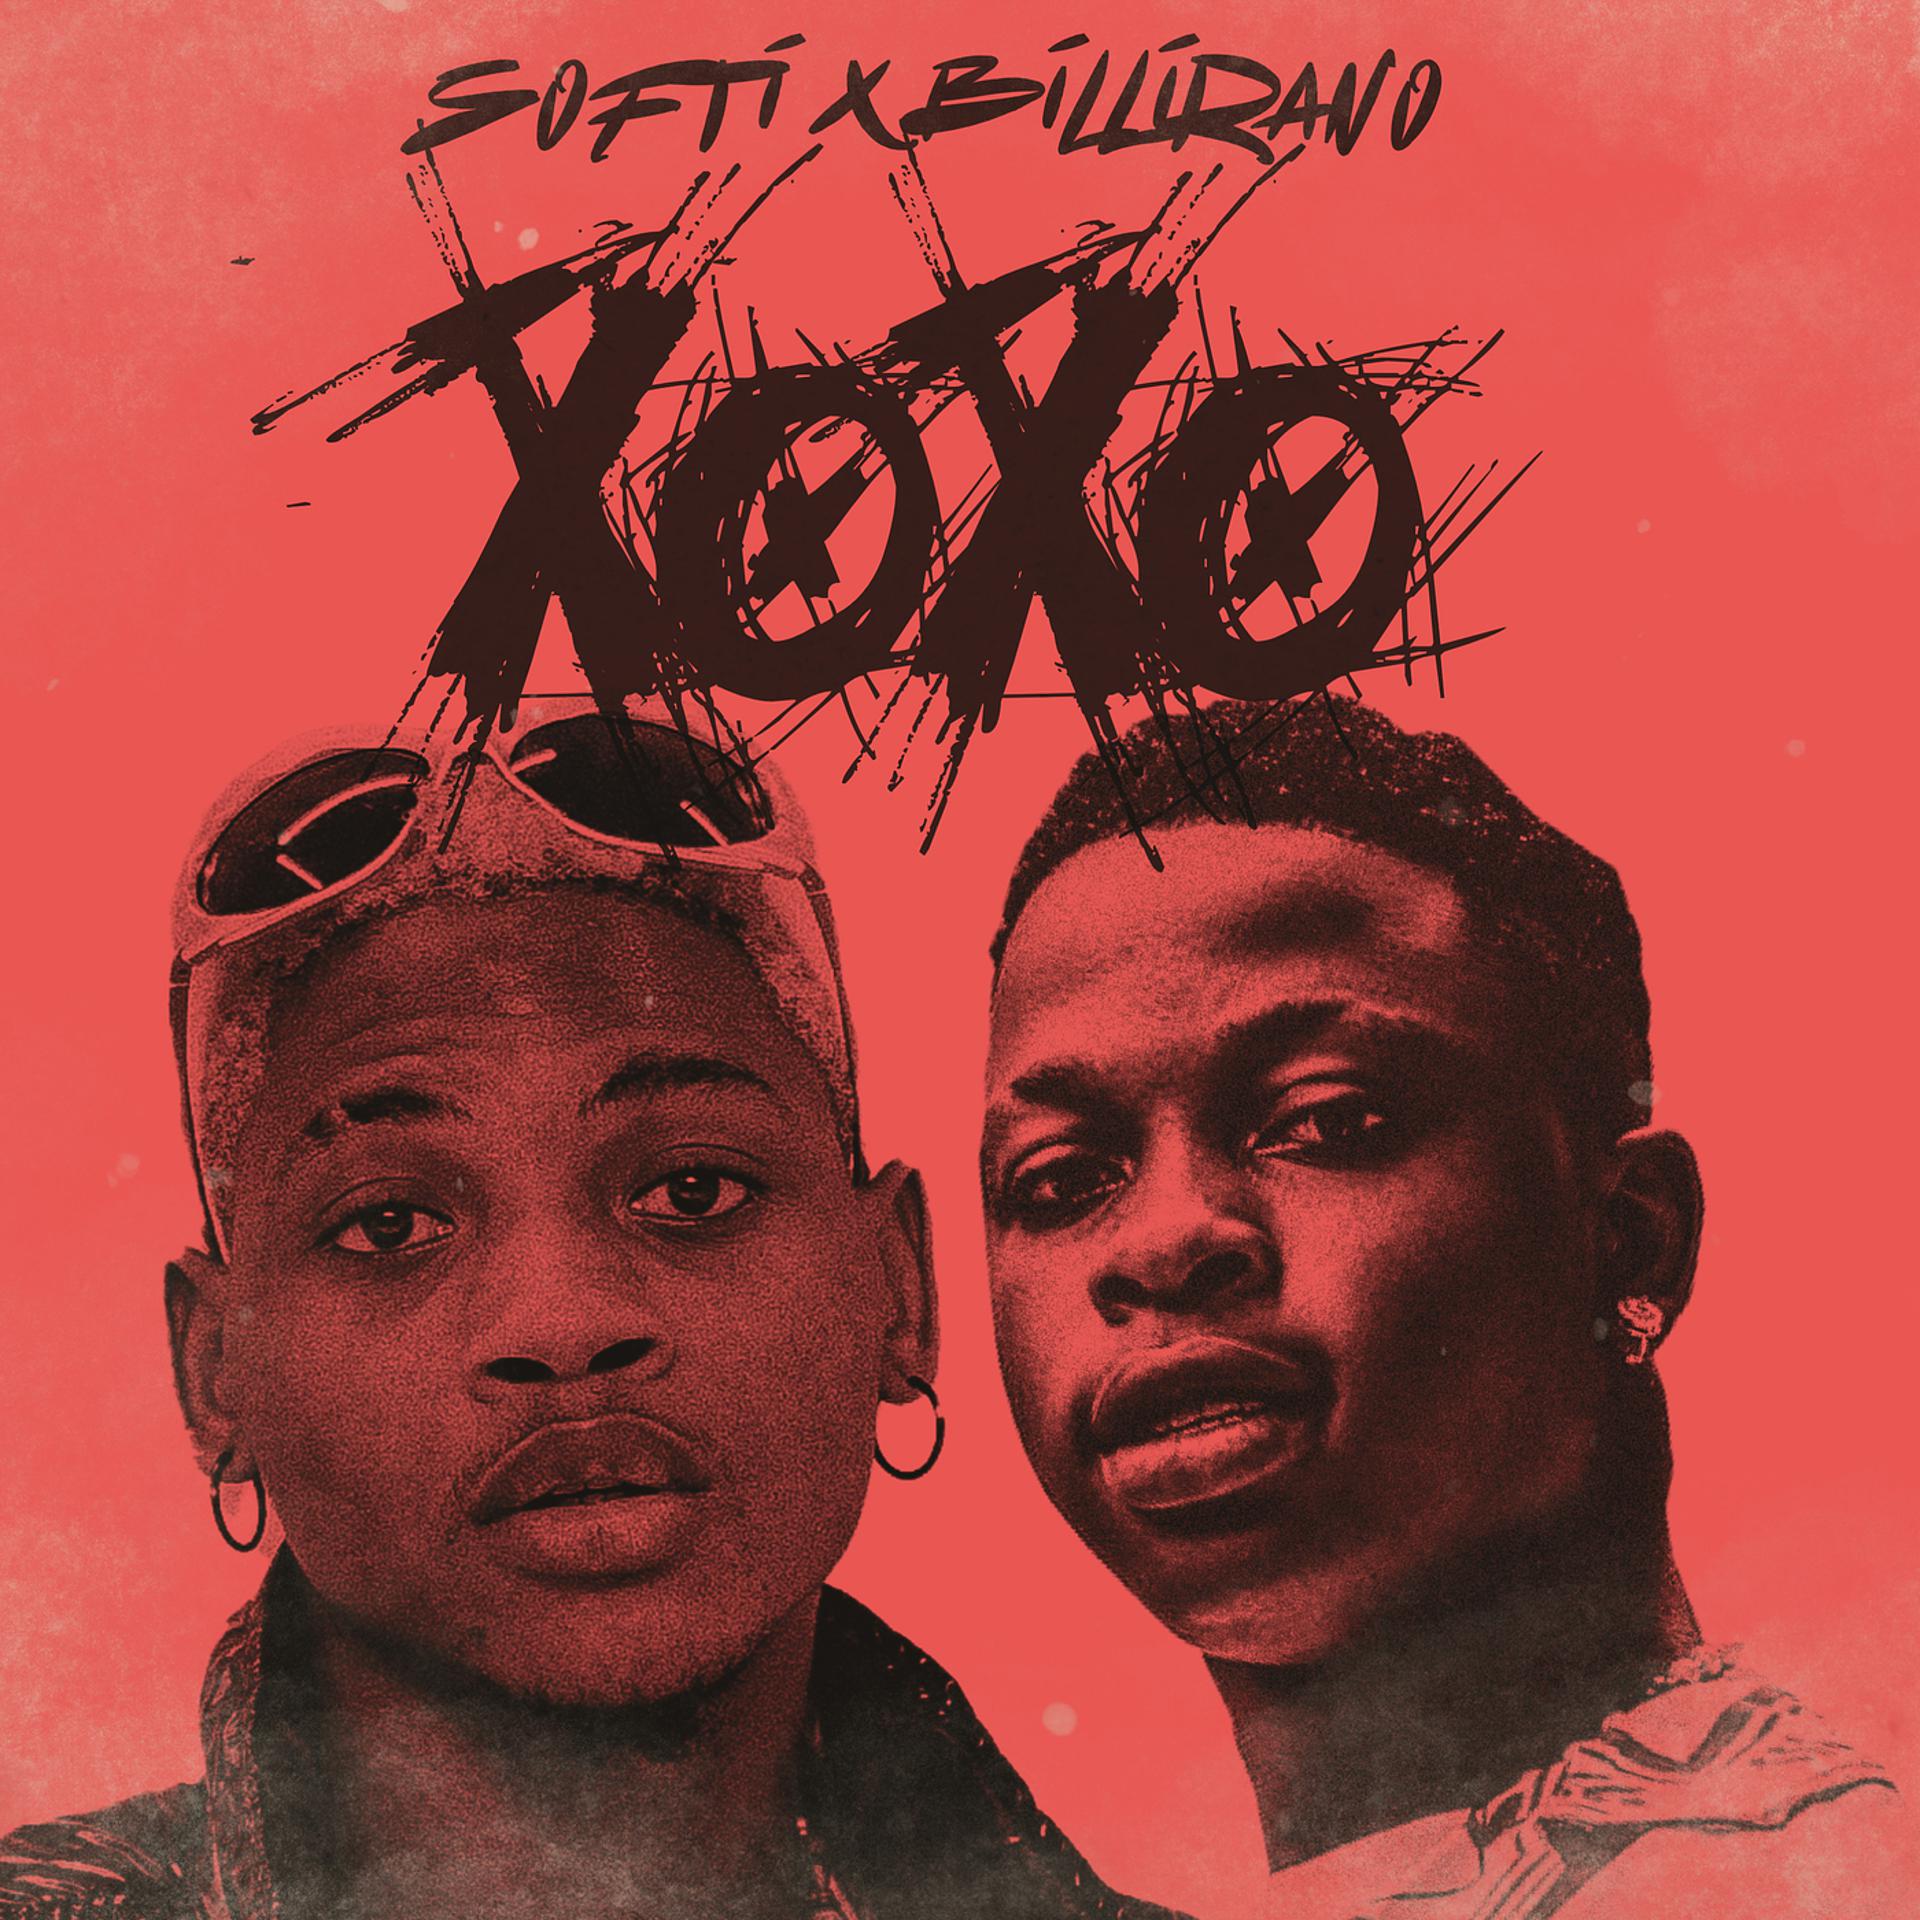 Постер альбома Xoxo